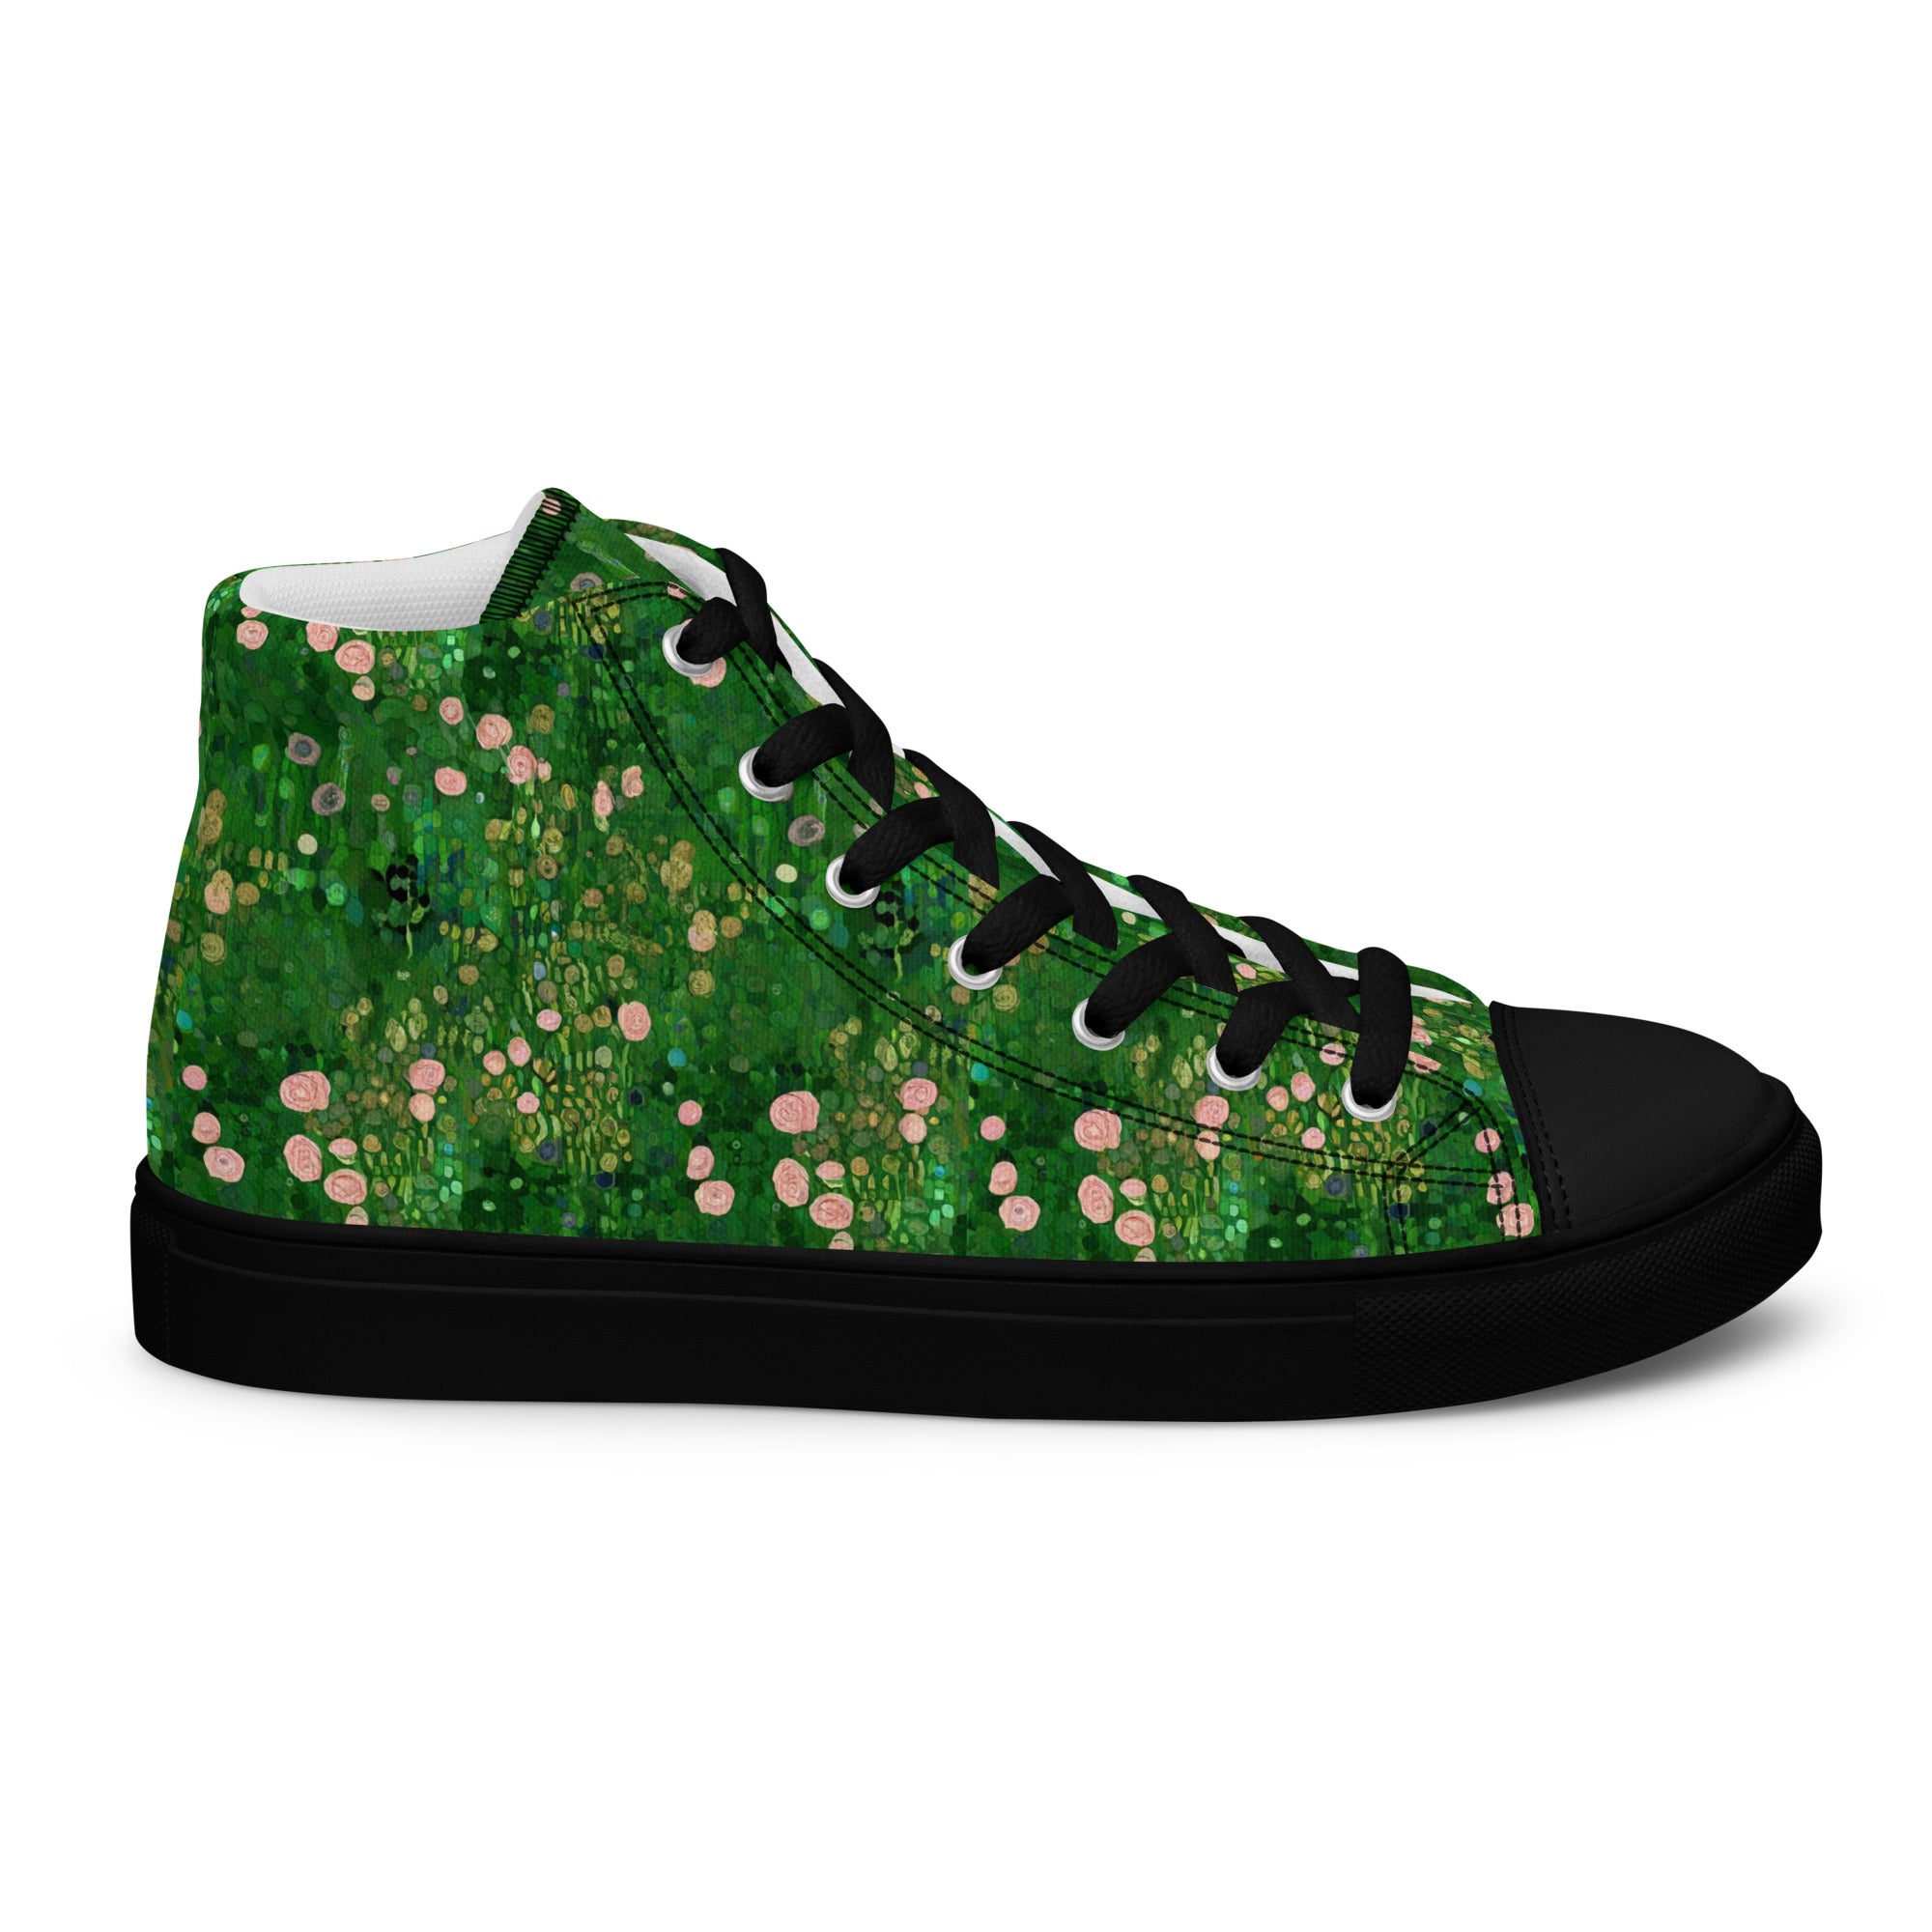 Gustav Klimt 'Rosebushes under the Trees' High Top Shoes | Premium Art High Top Sneakers for Men